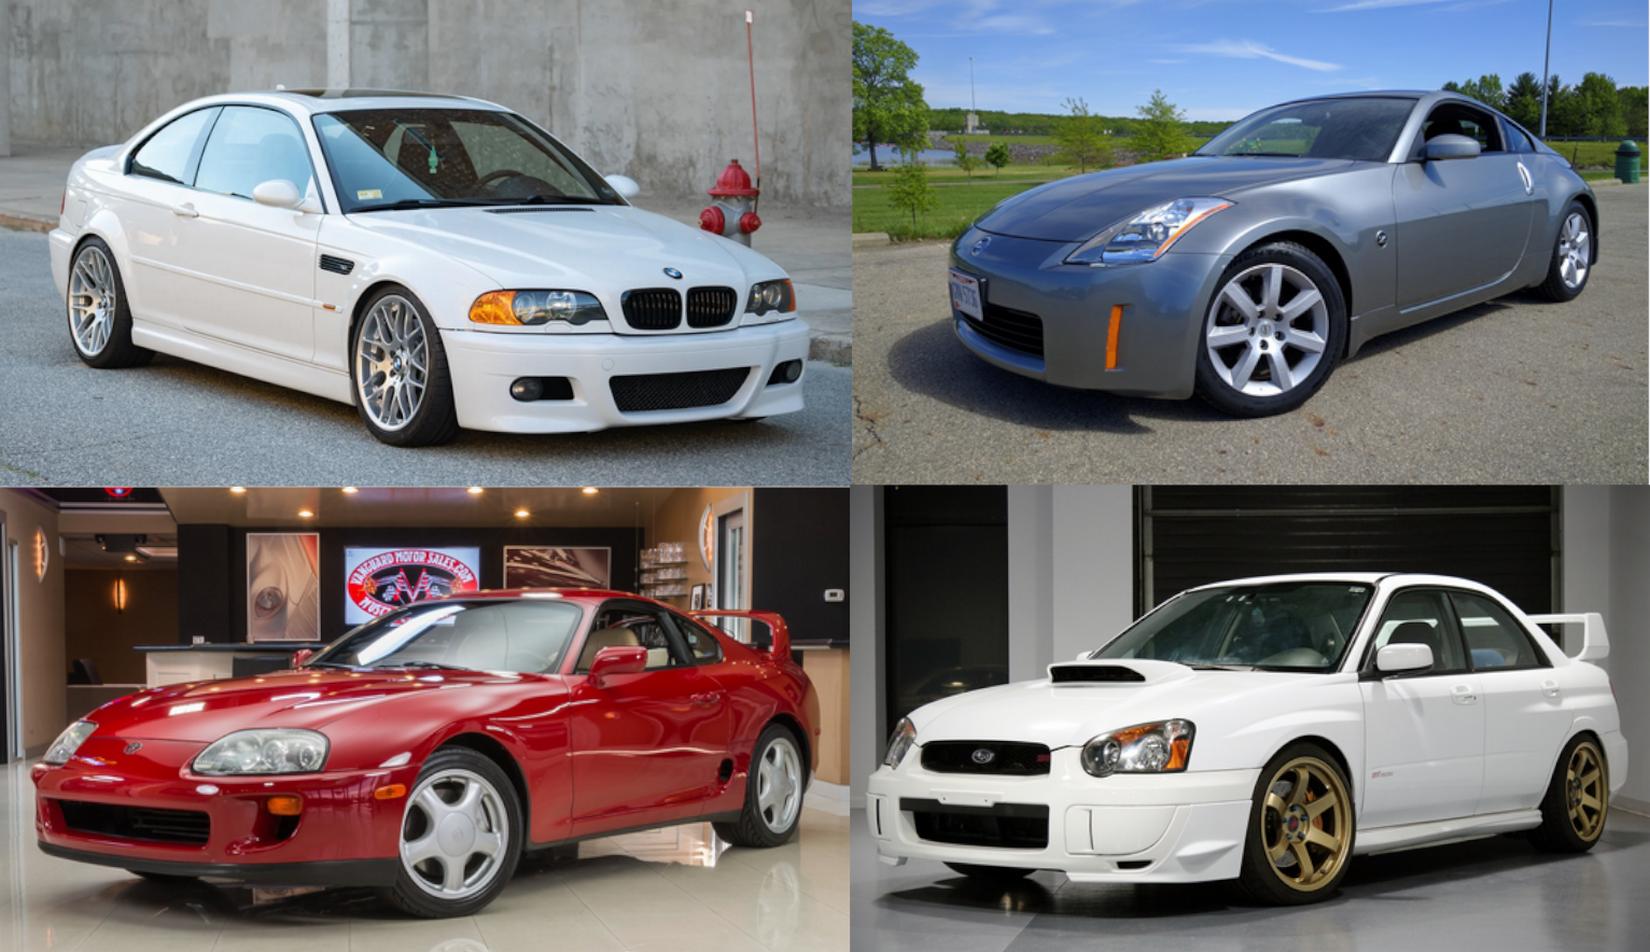 2005 BMW M3, 2002 Nissan 350Z, 1994 Toyota Supra, 2005 Subaru WRX Sti